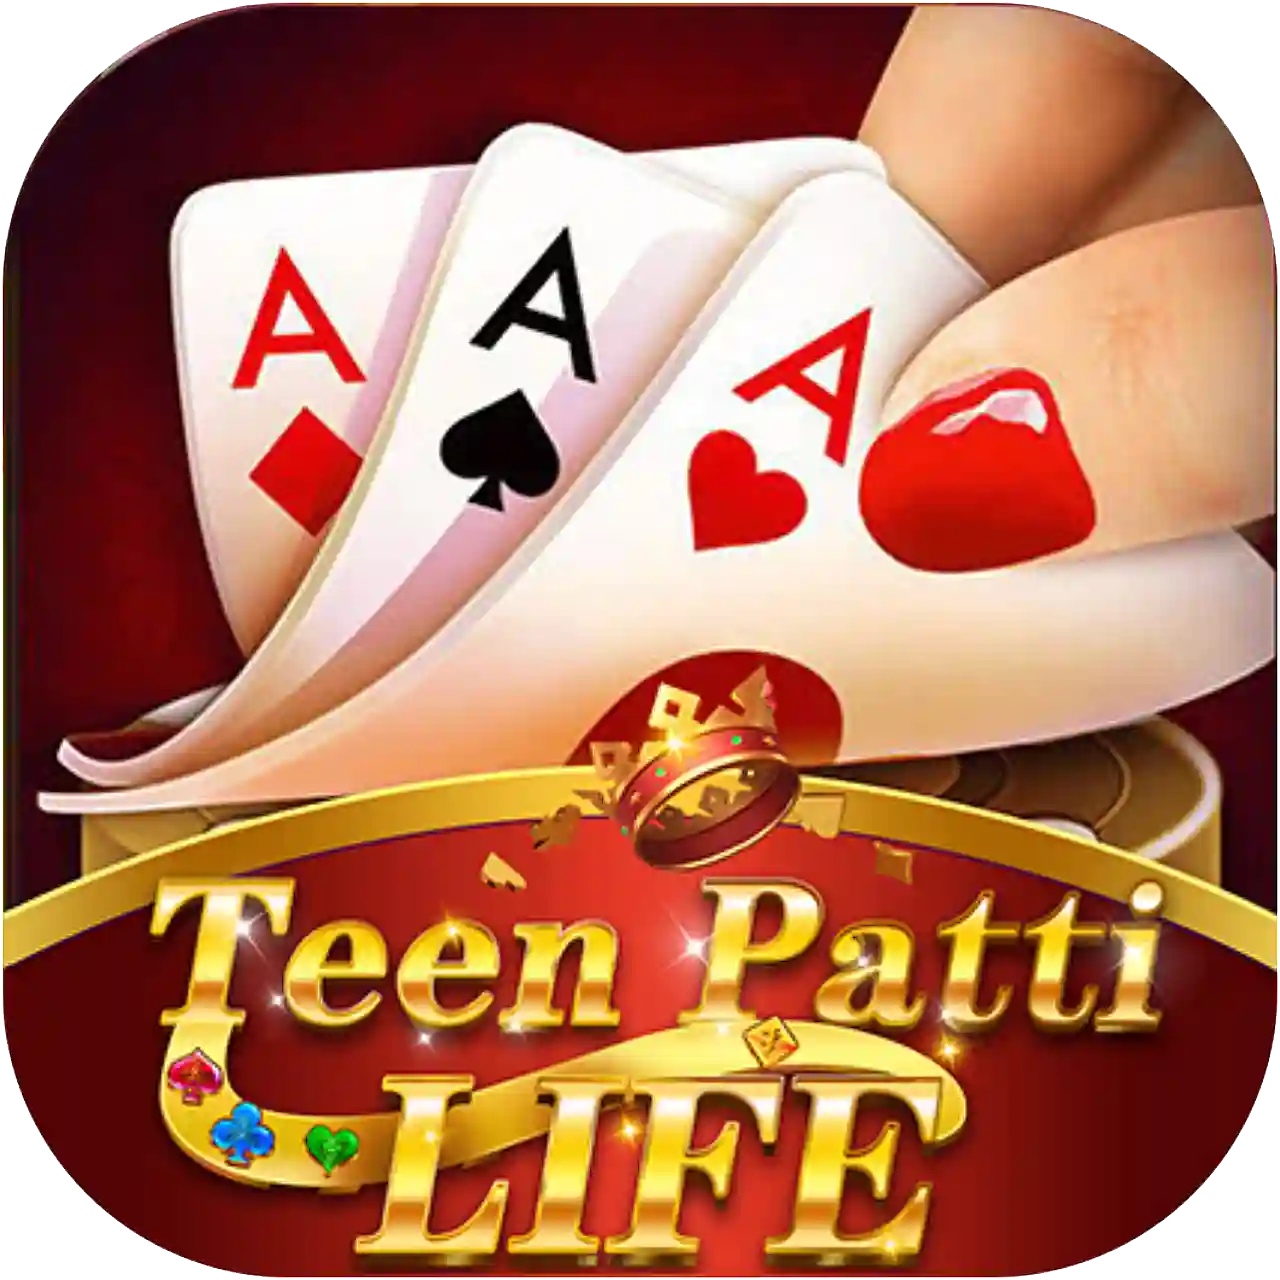 Teen Patti Life - All Teen Patti App